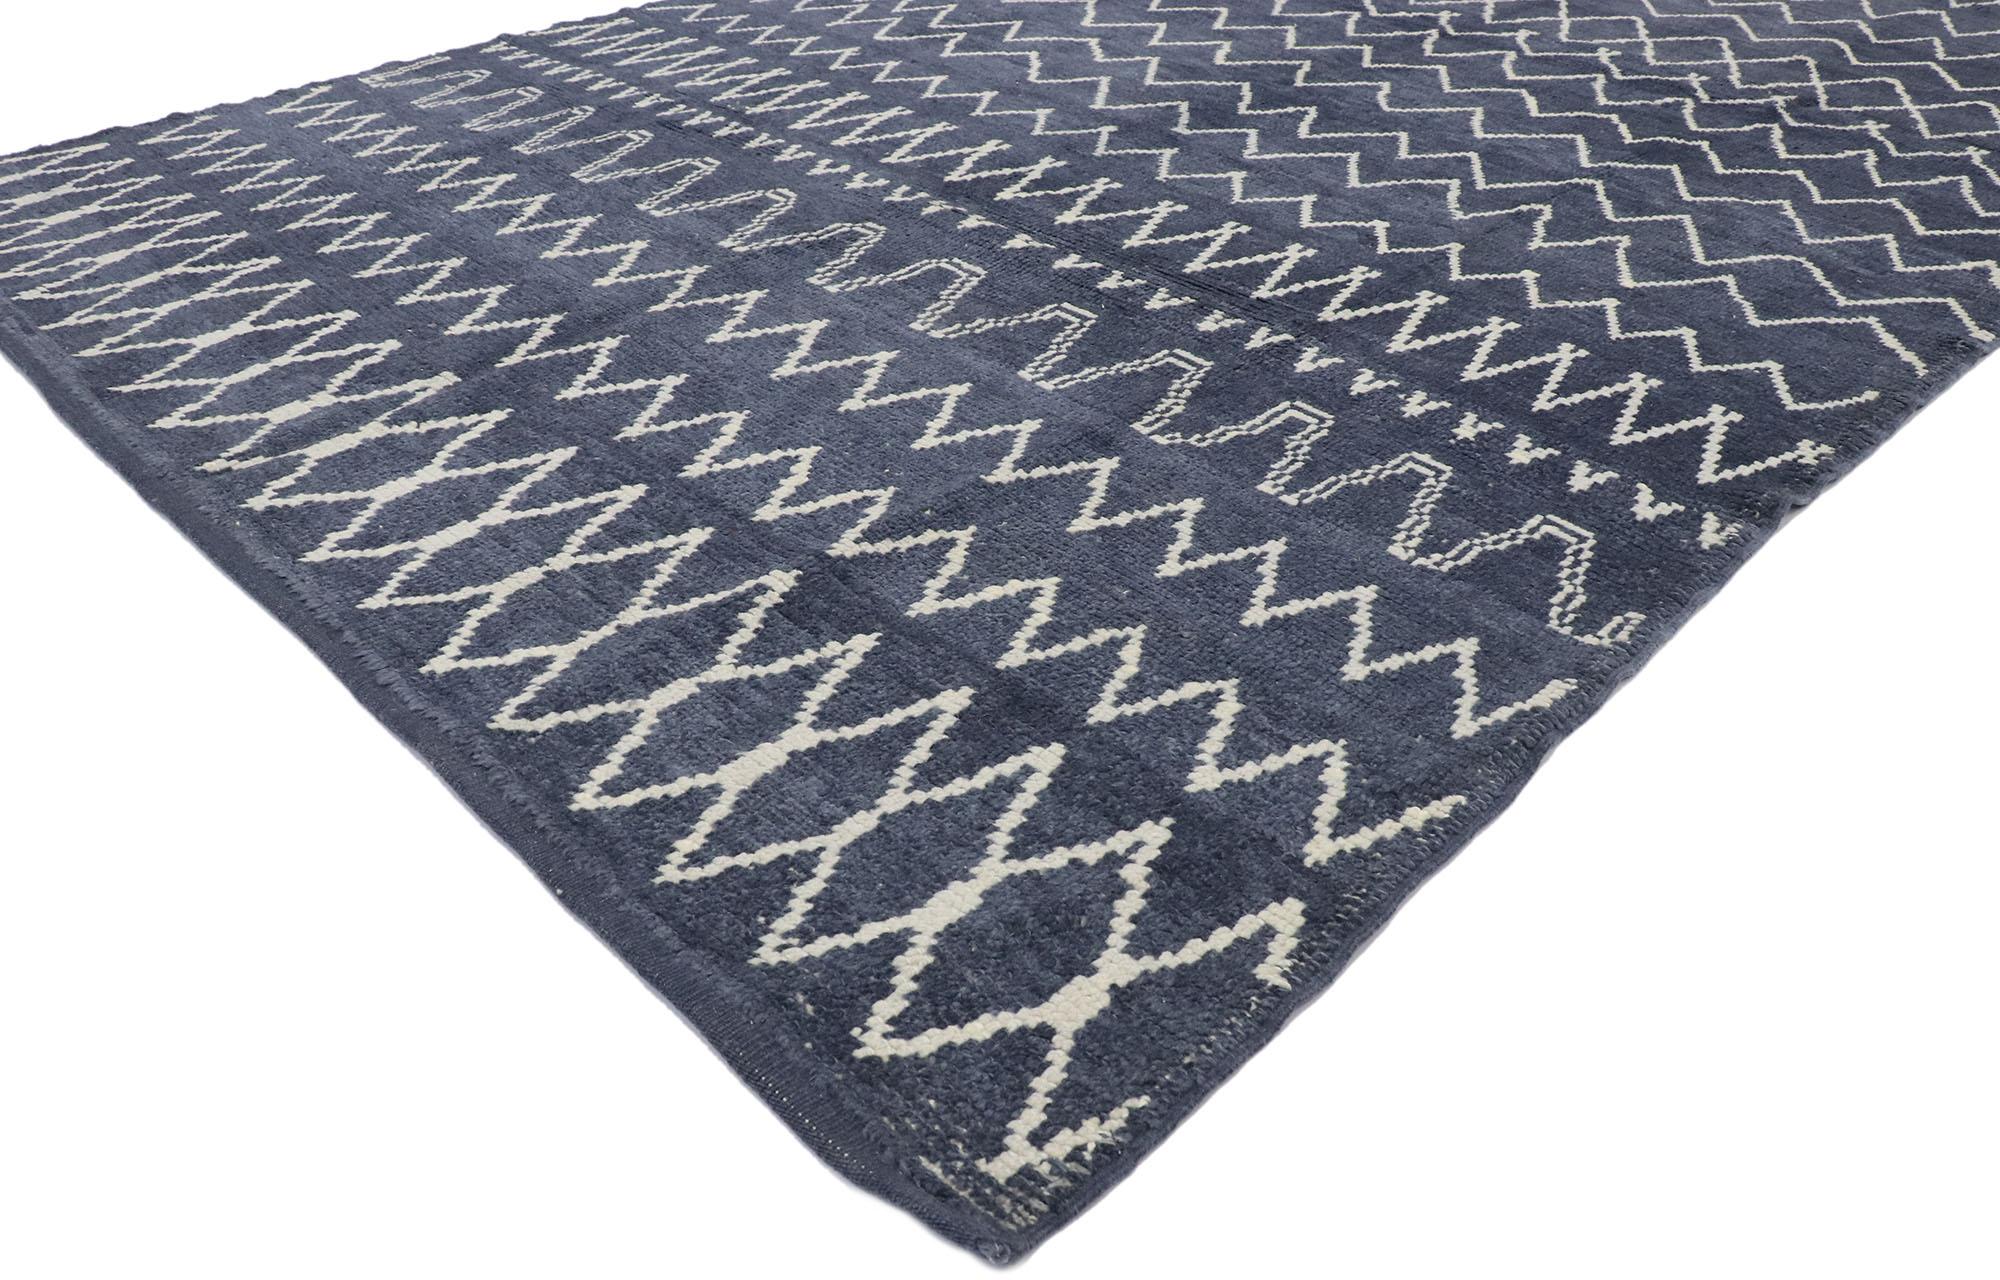 53452, nouveau tapis contemporain de style marocain avec un motif de diamants et de chevrons. Plus doux mais non moins saisissant, ce tapis marocain contemporain en laine nouée à la main incarne un style tribal boho chic et confortable aux